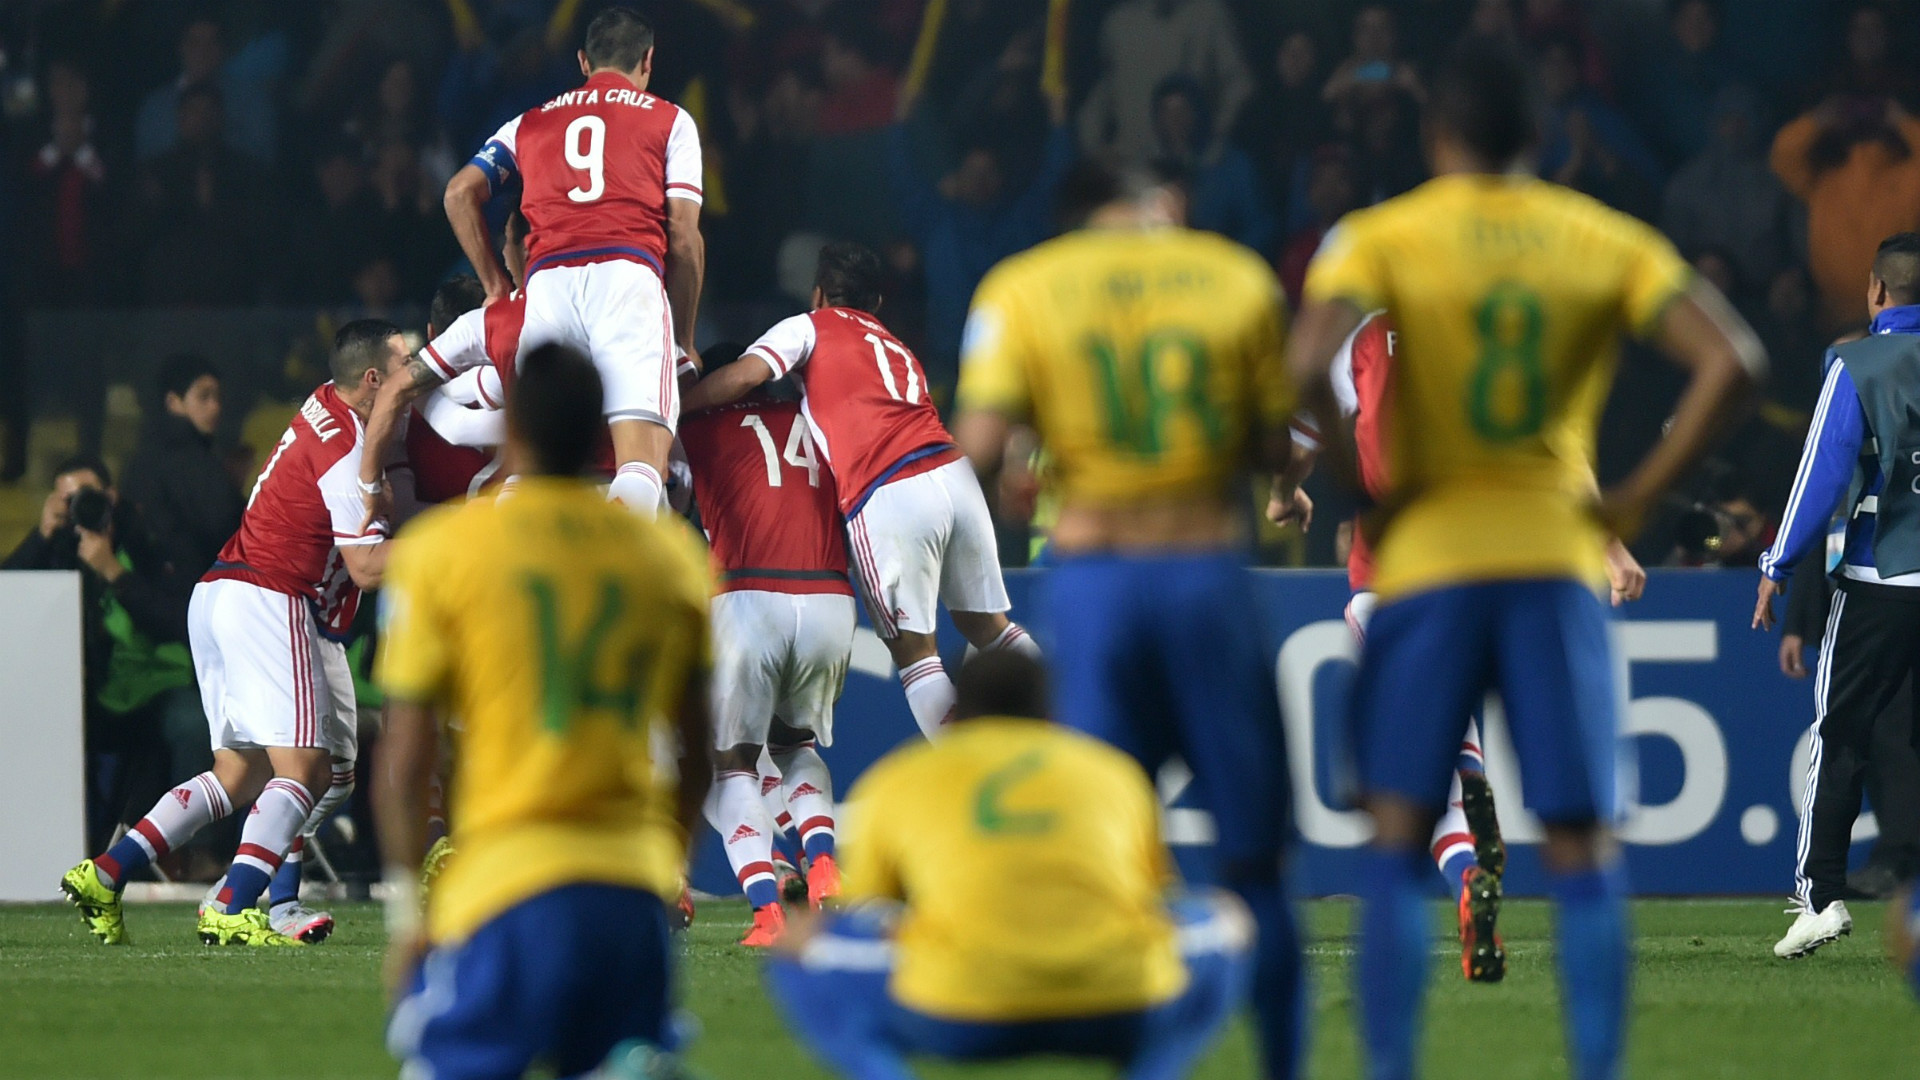 برزیل (3)1-1(4) پاراگوئه؛ صعود پاراگوئه در ضربات پنالتی